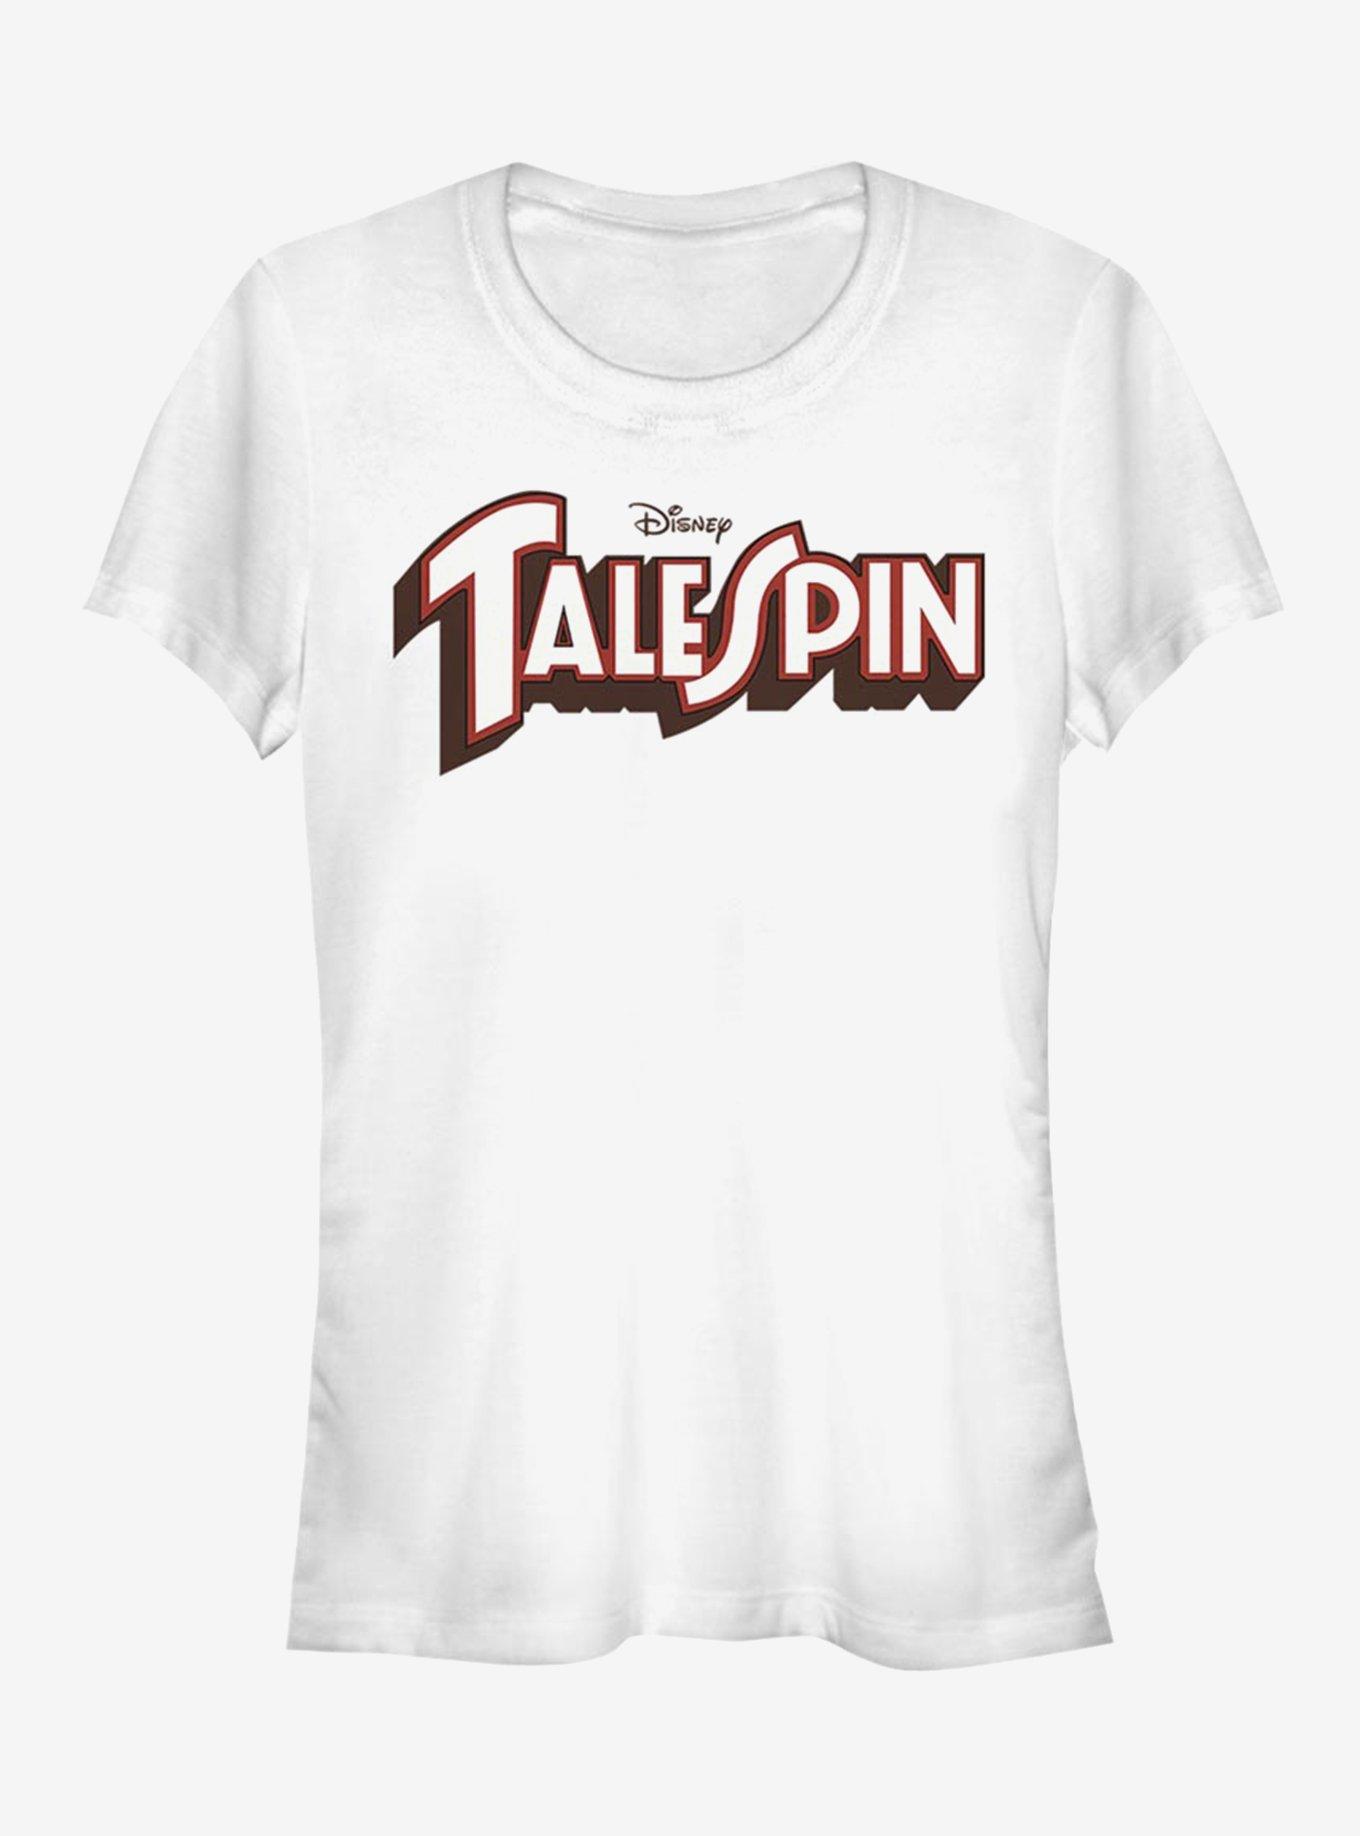 Disney TaleSpin Logo Spin Girls T-Shirt, WHITE, hi-res